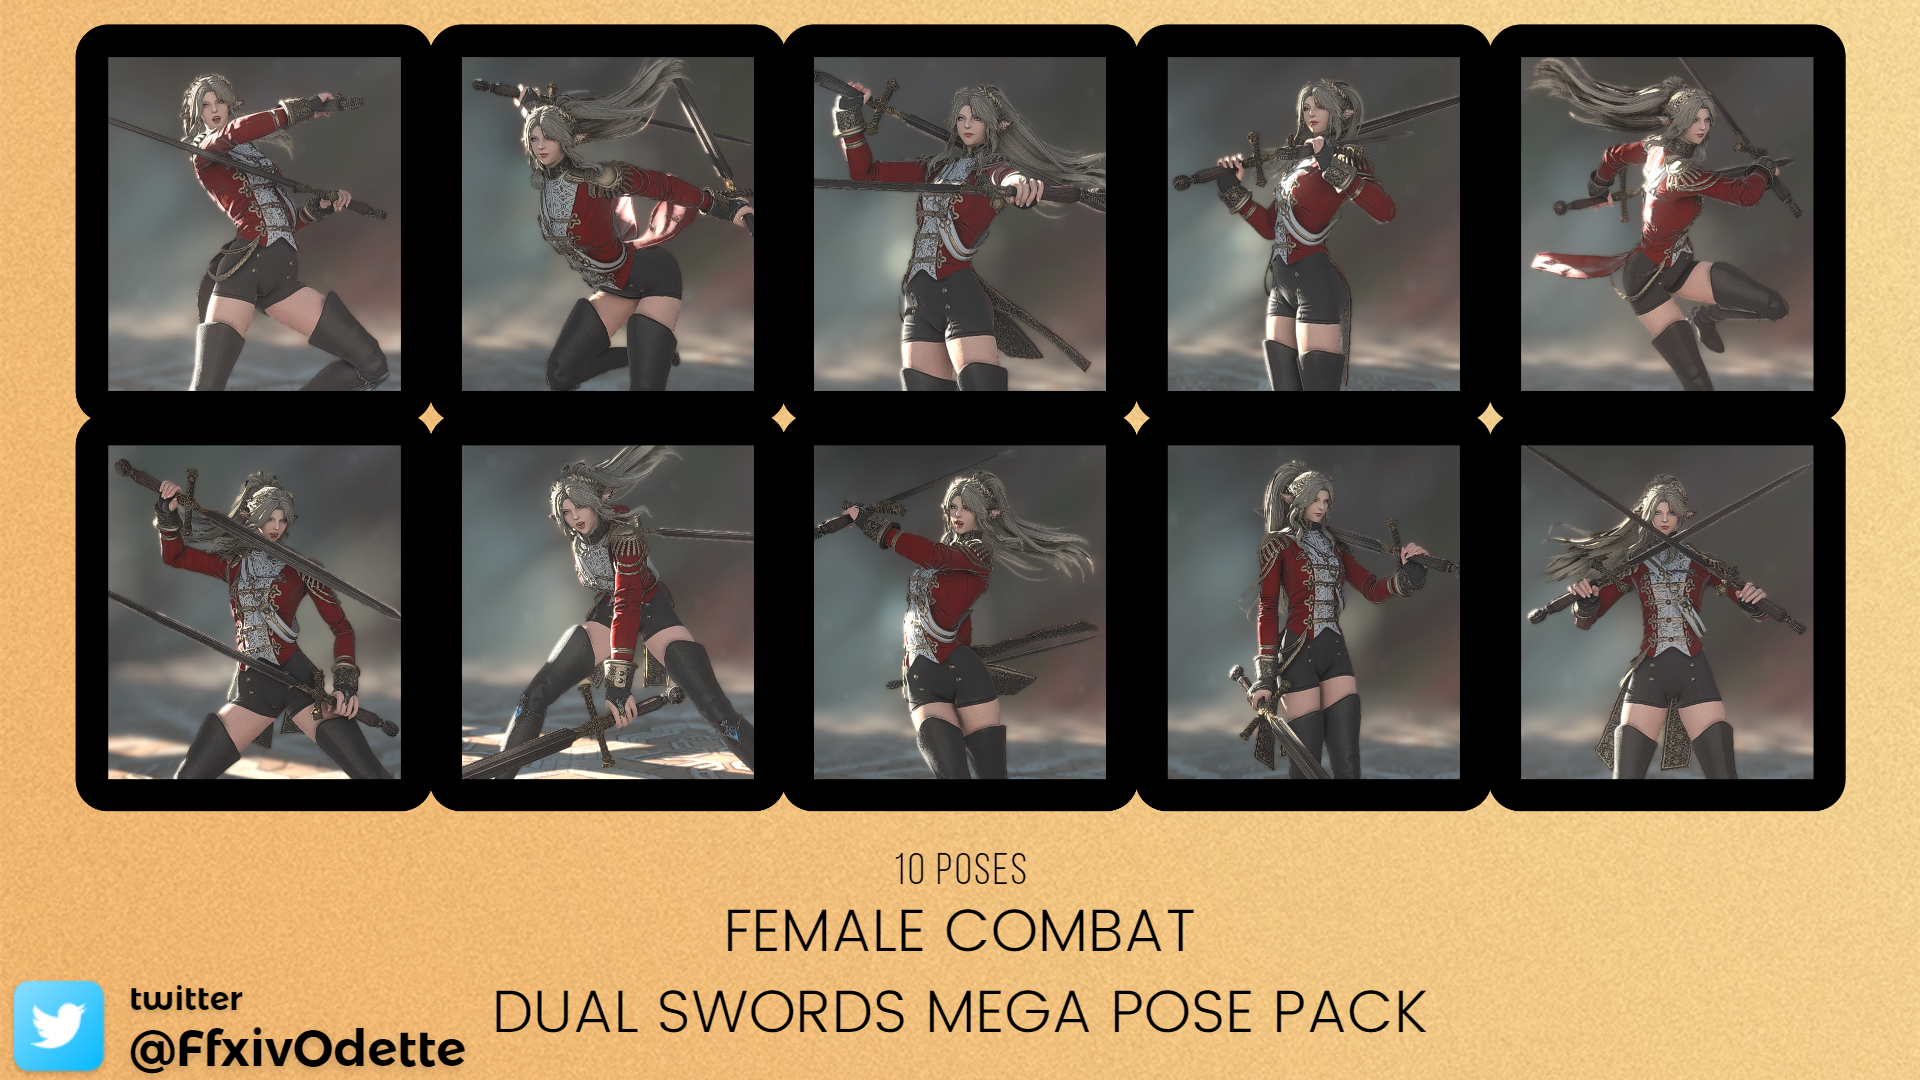 Dual Sword Poses